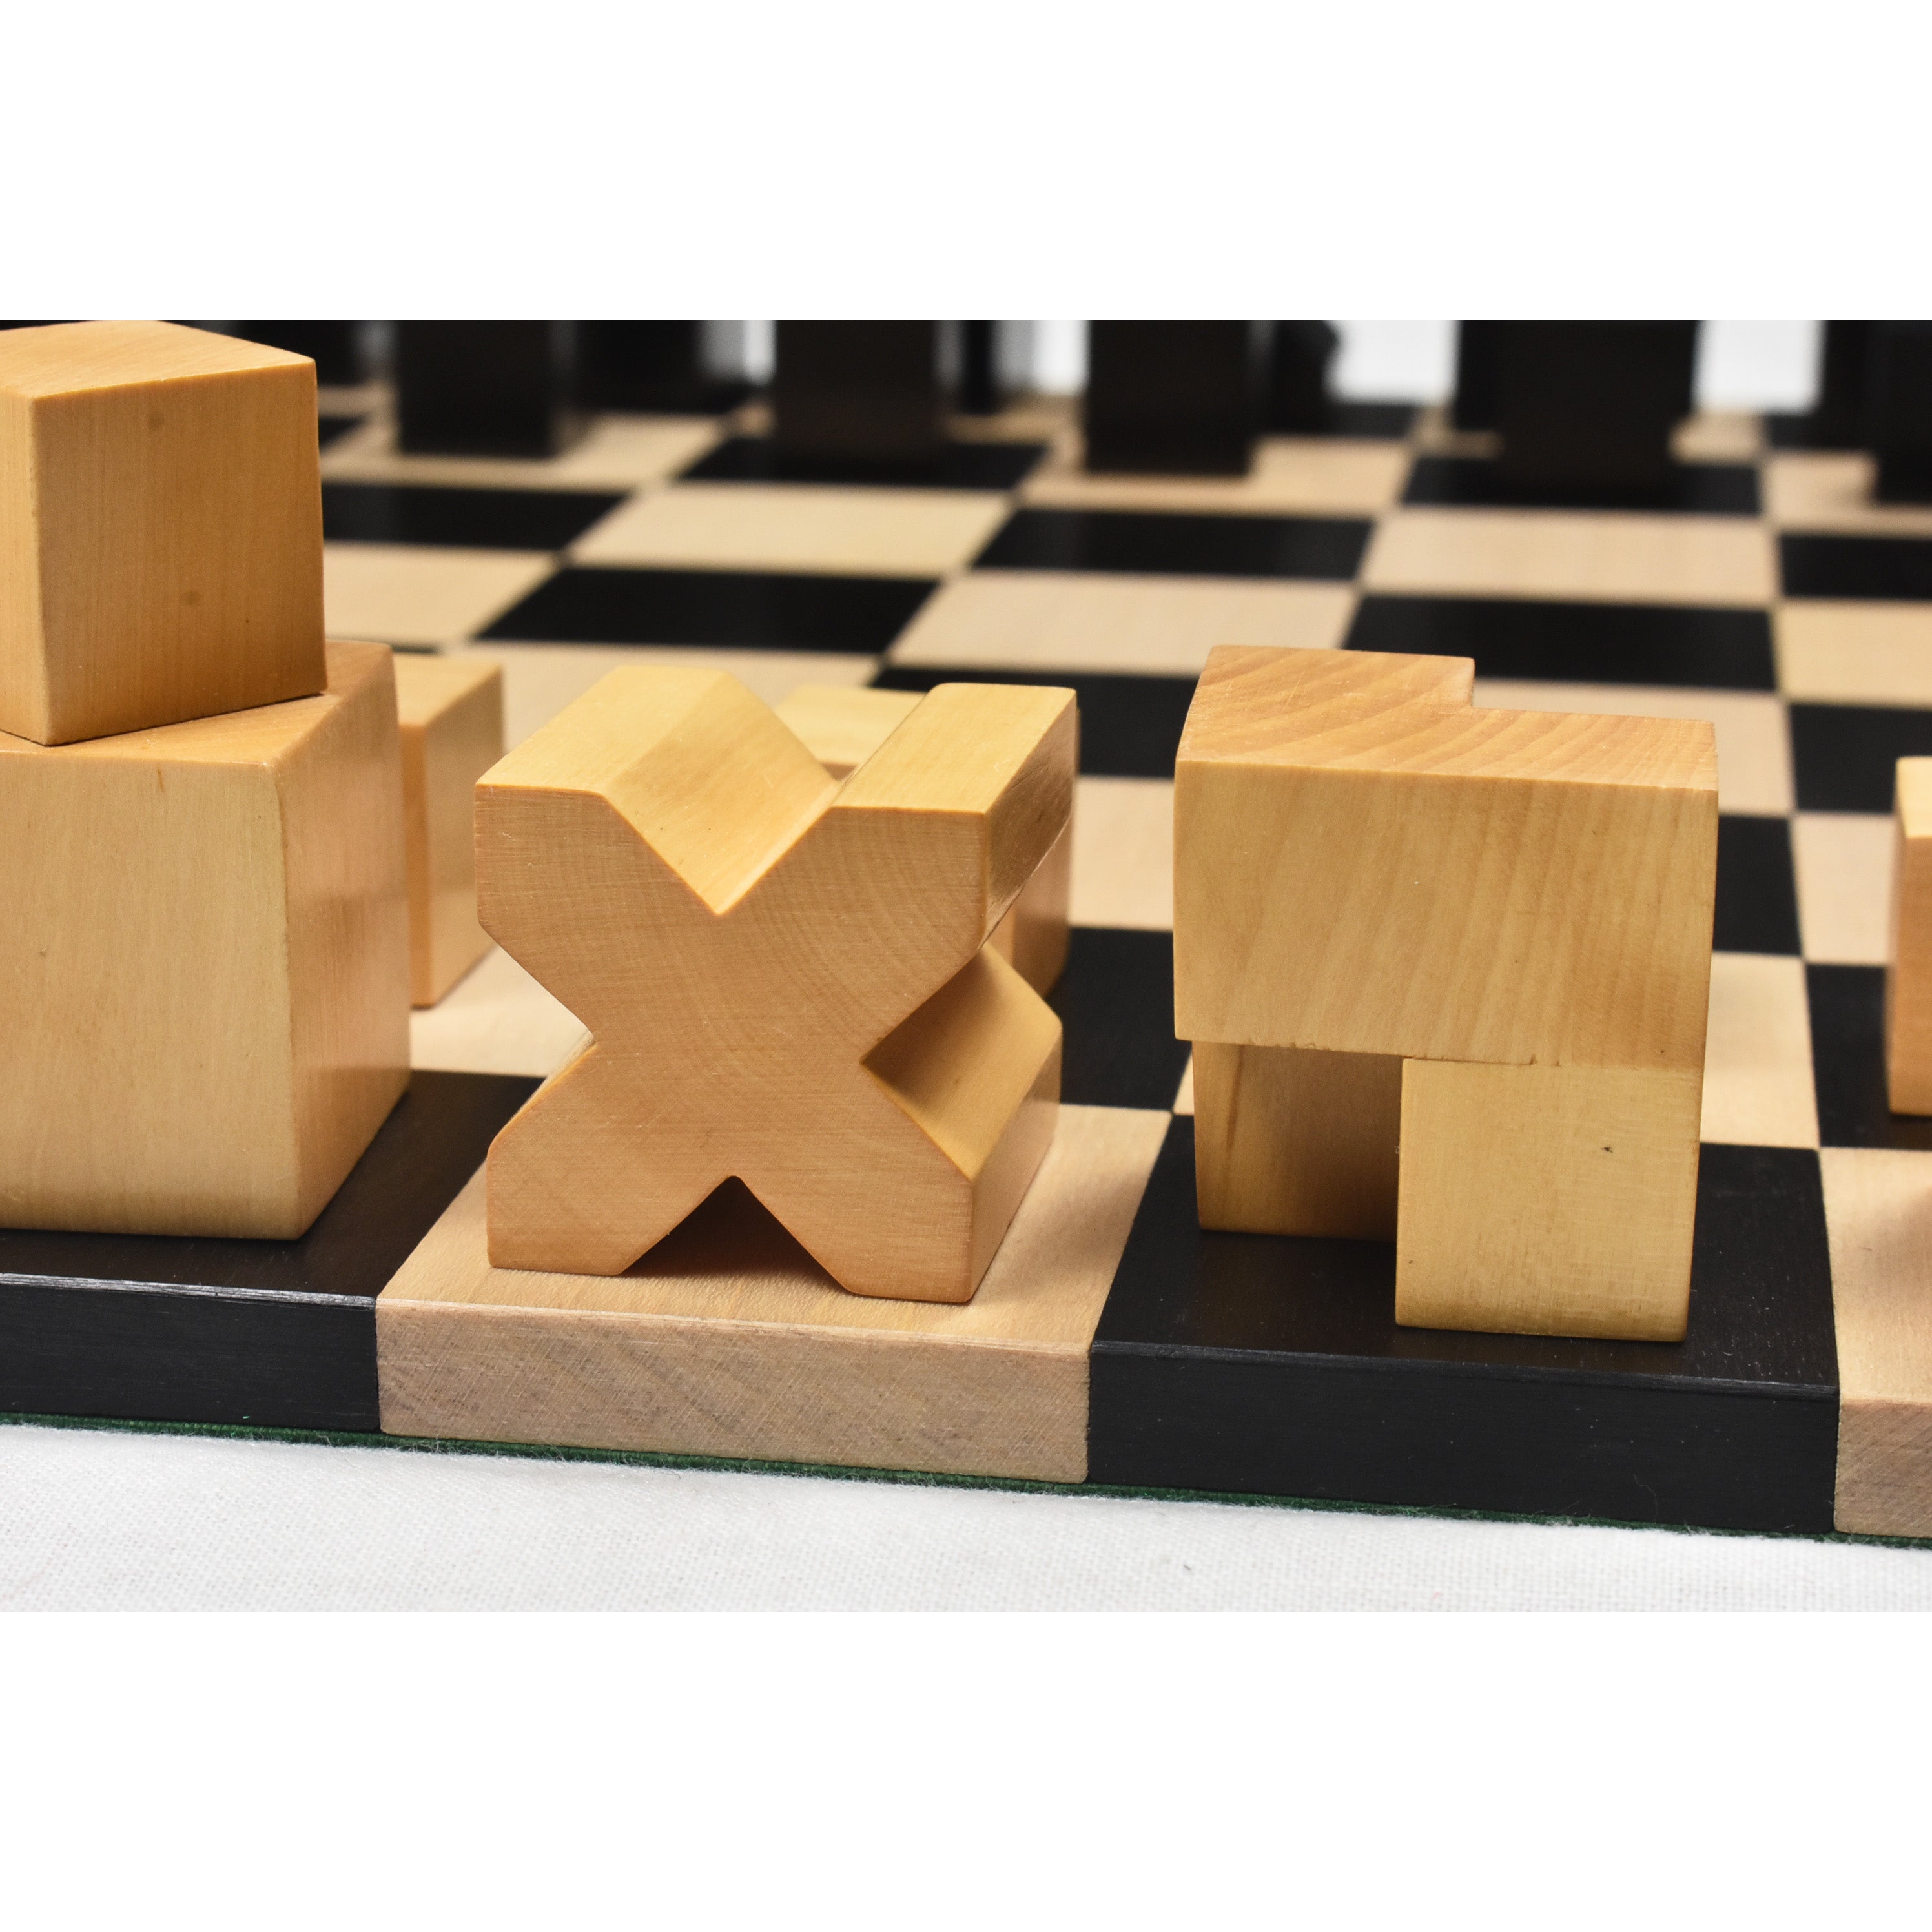 1923 Bauhaus Combo Chess Set | Royalchessmall | Wood Chess Sets | Luxury Chess Pieces